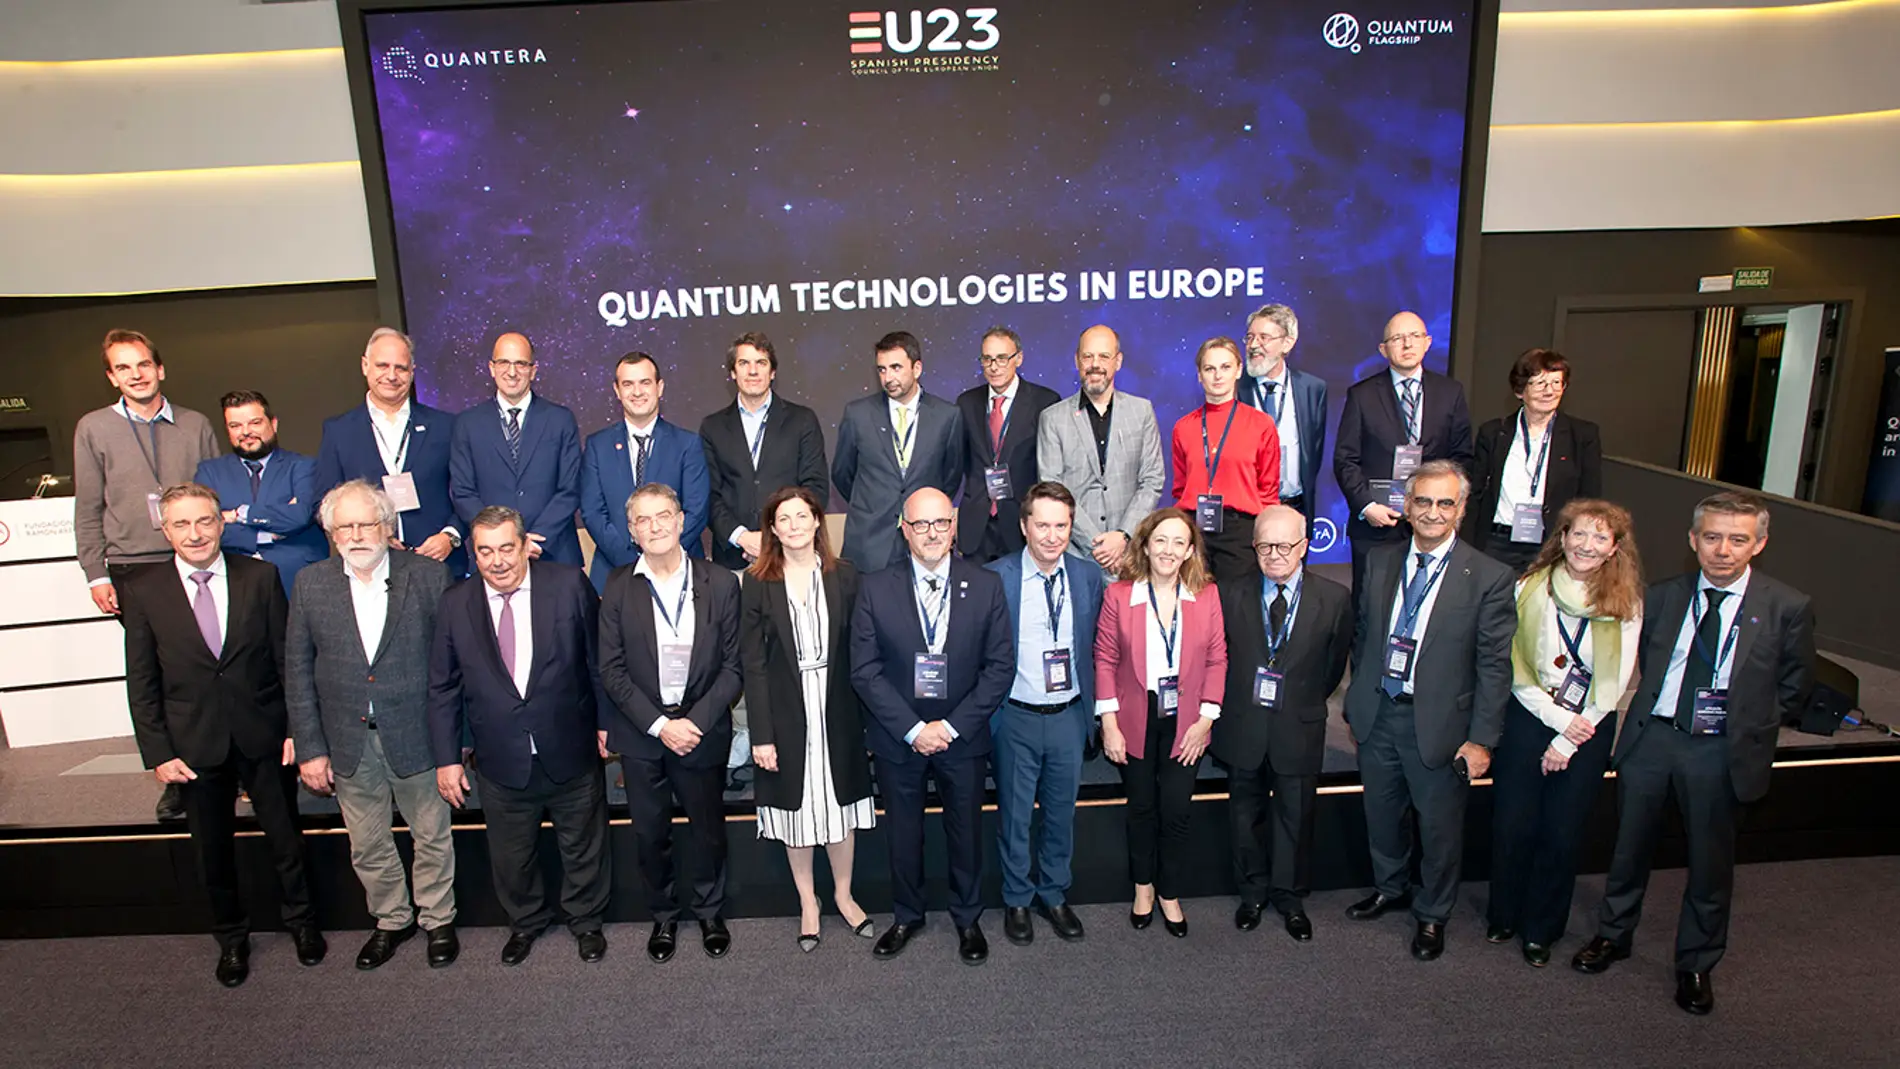 El Gobierno impulsa las tecnologias cuanticas en Espana con la celebracion de una conferencia europea en Madrid